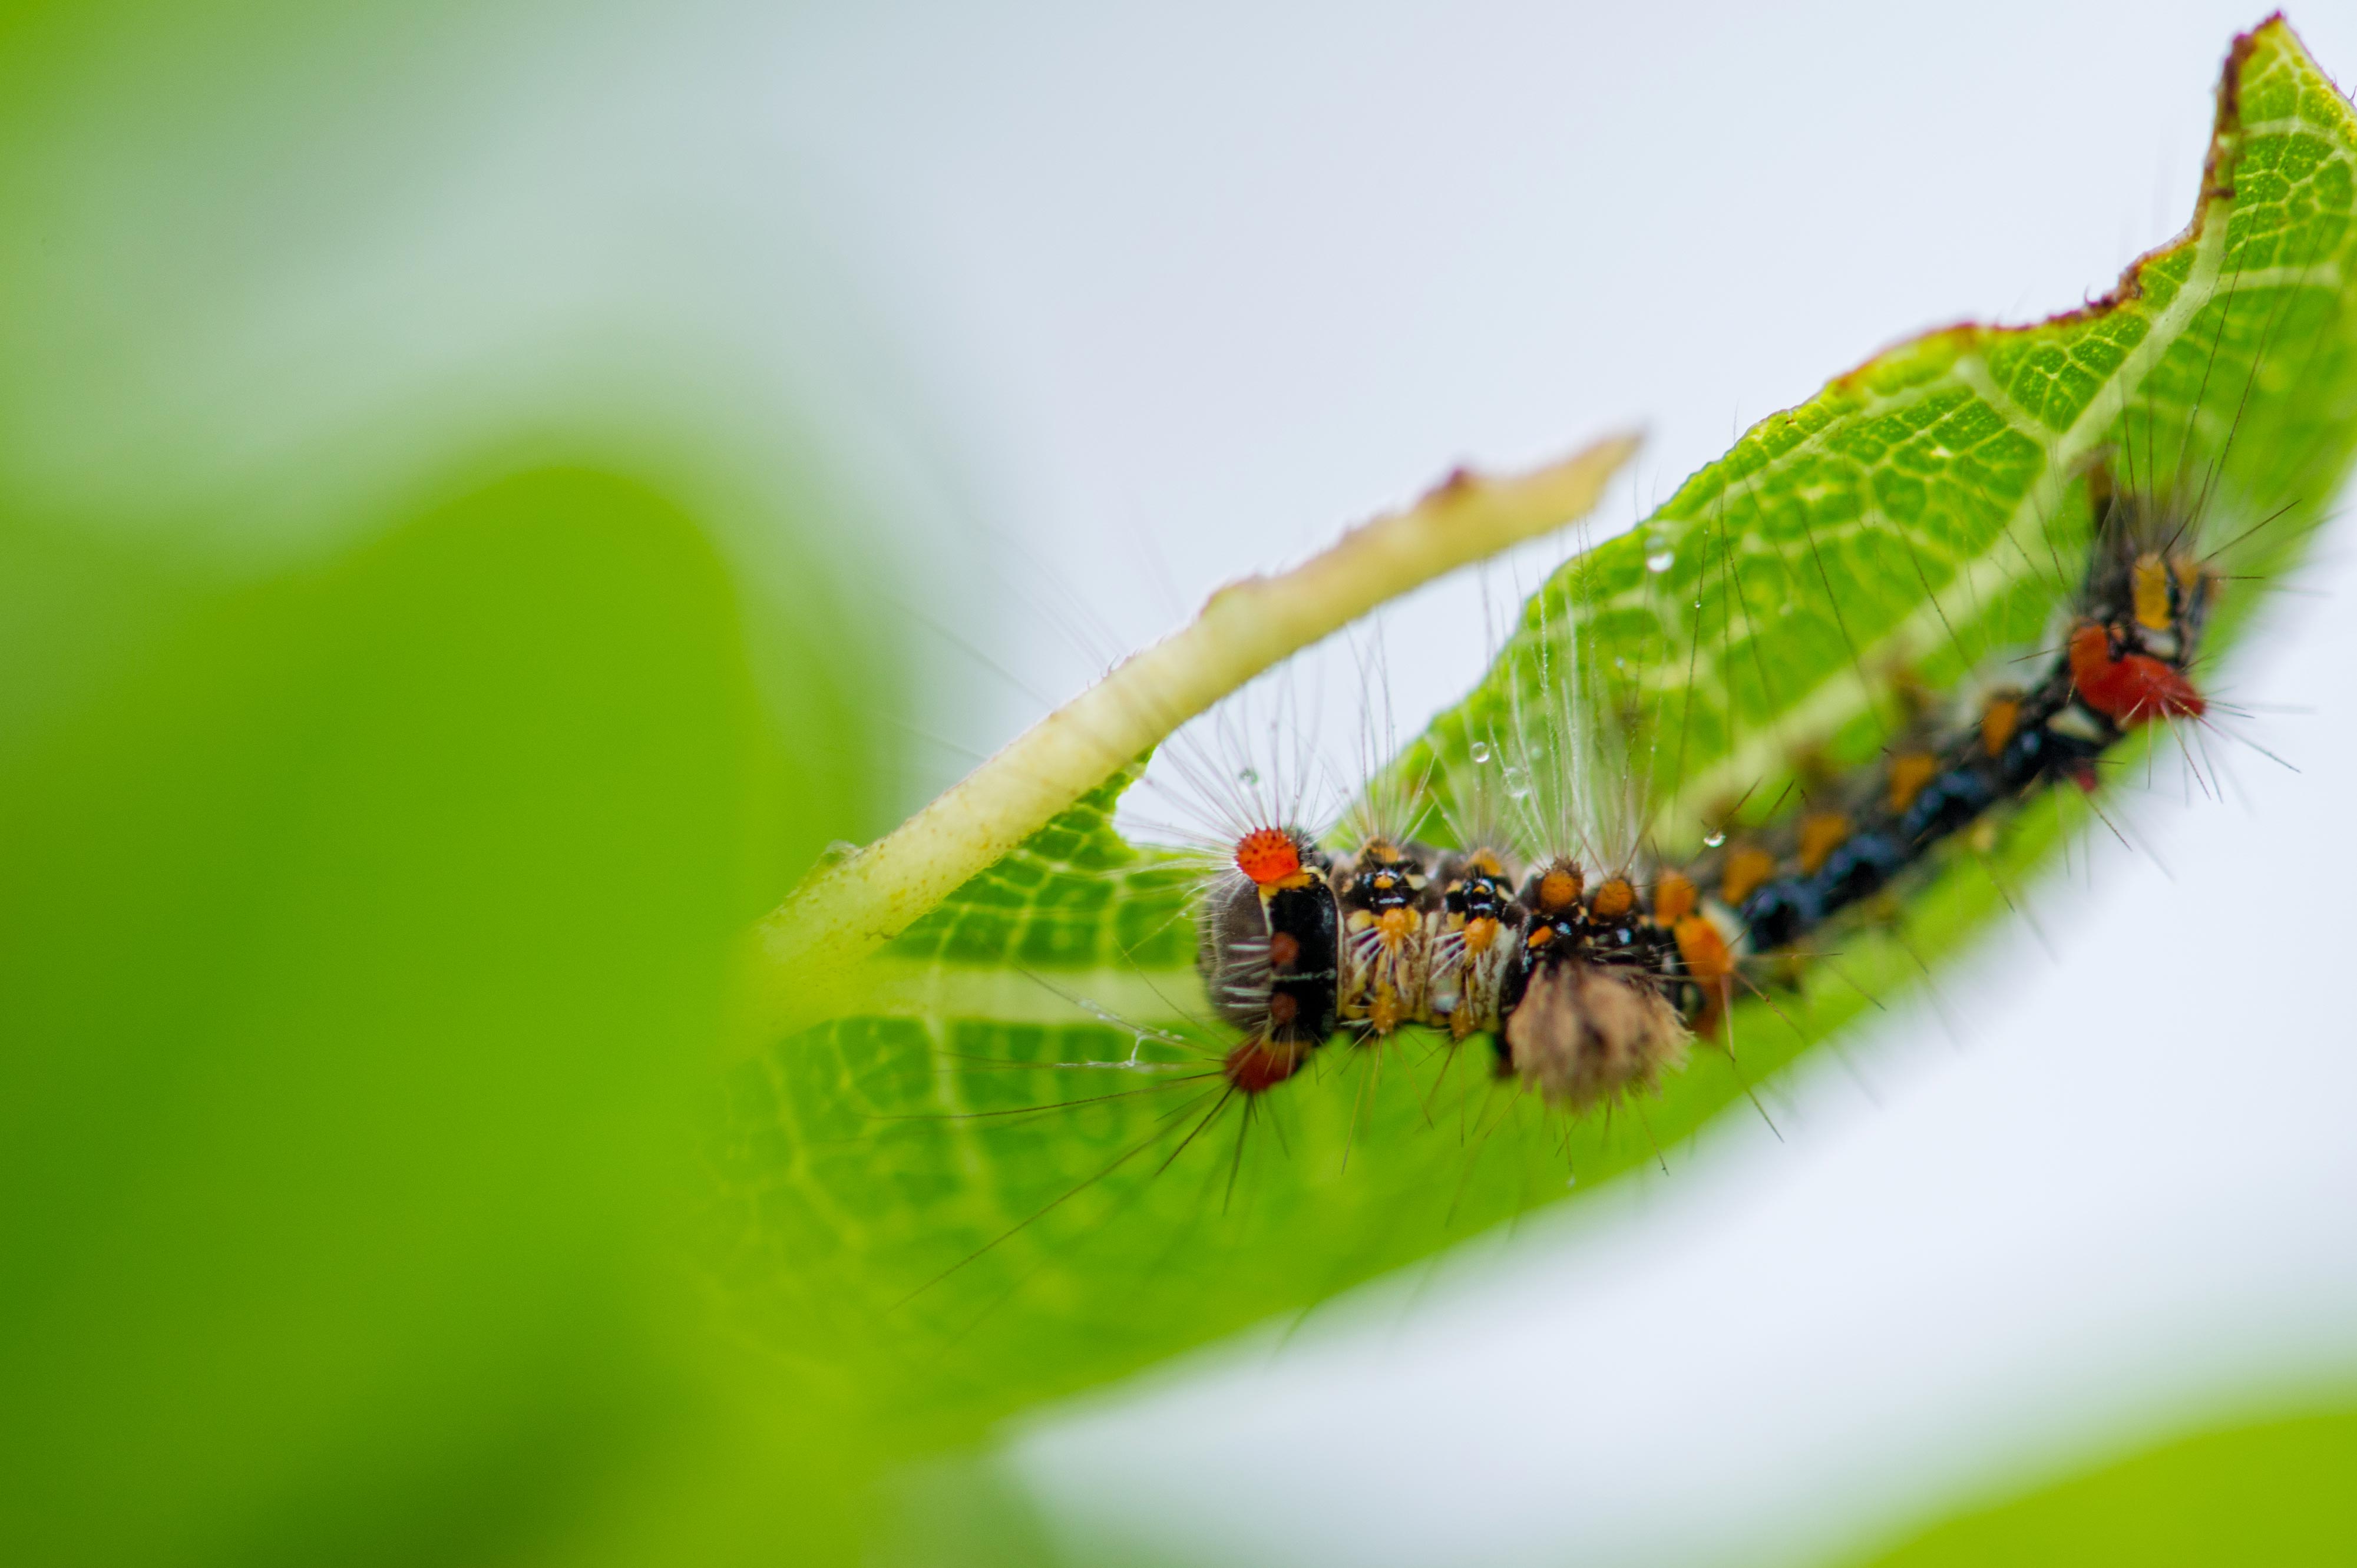 スキバドクガ 虫の写真と生態なら昆虫写真図鑑 ムシミル